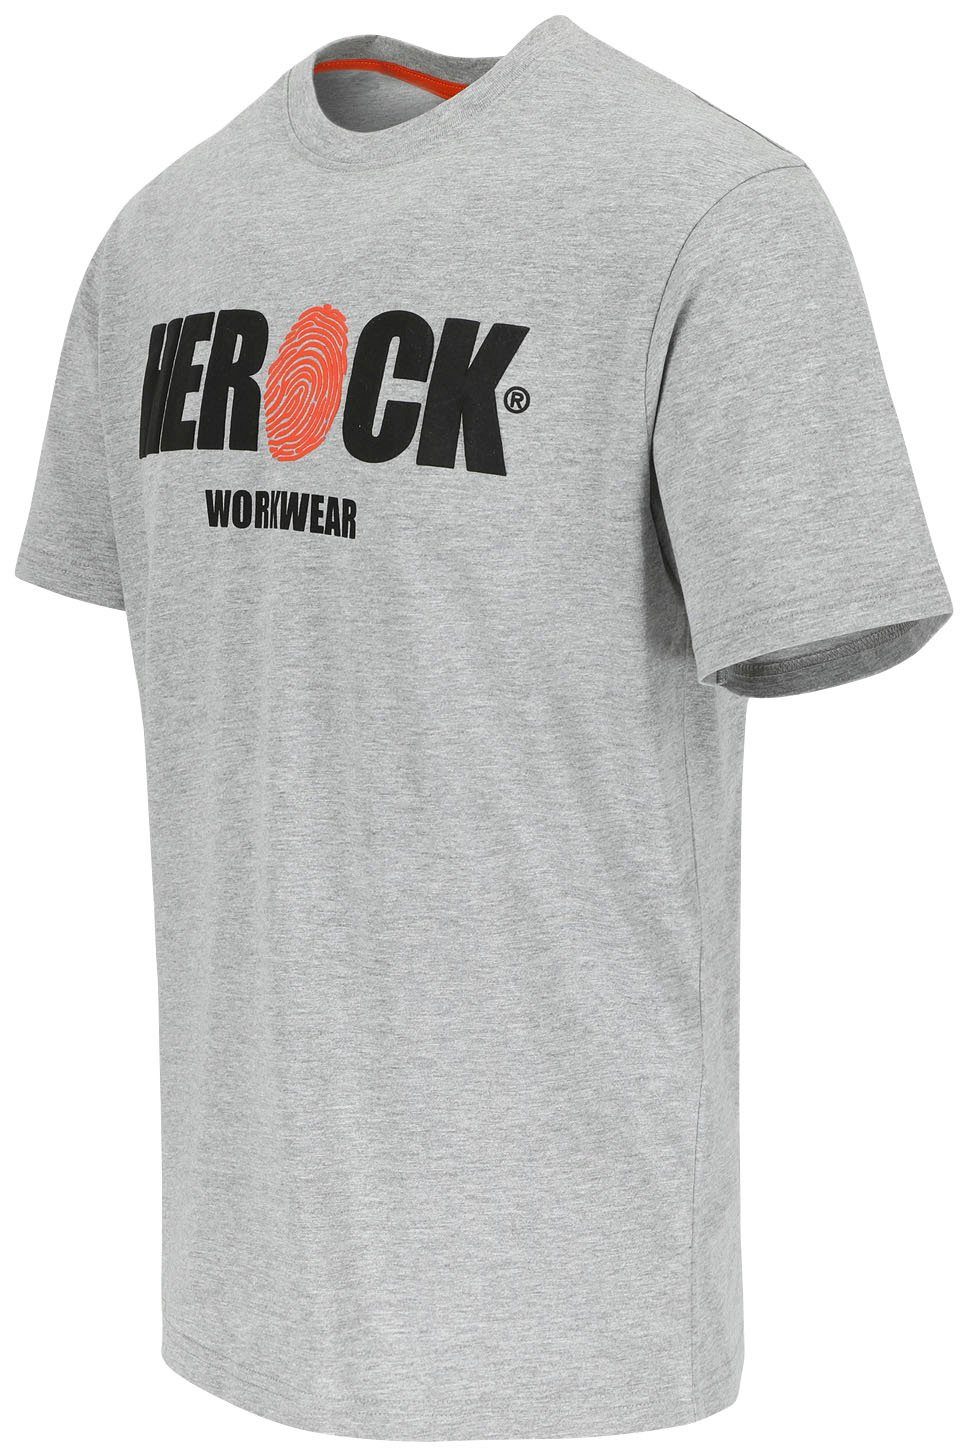 Herock T-Shirt ENI Herock®-Aufdruck, Rundhals, Tragegefühl Baumwolle, mit angenehmes grau